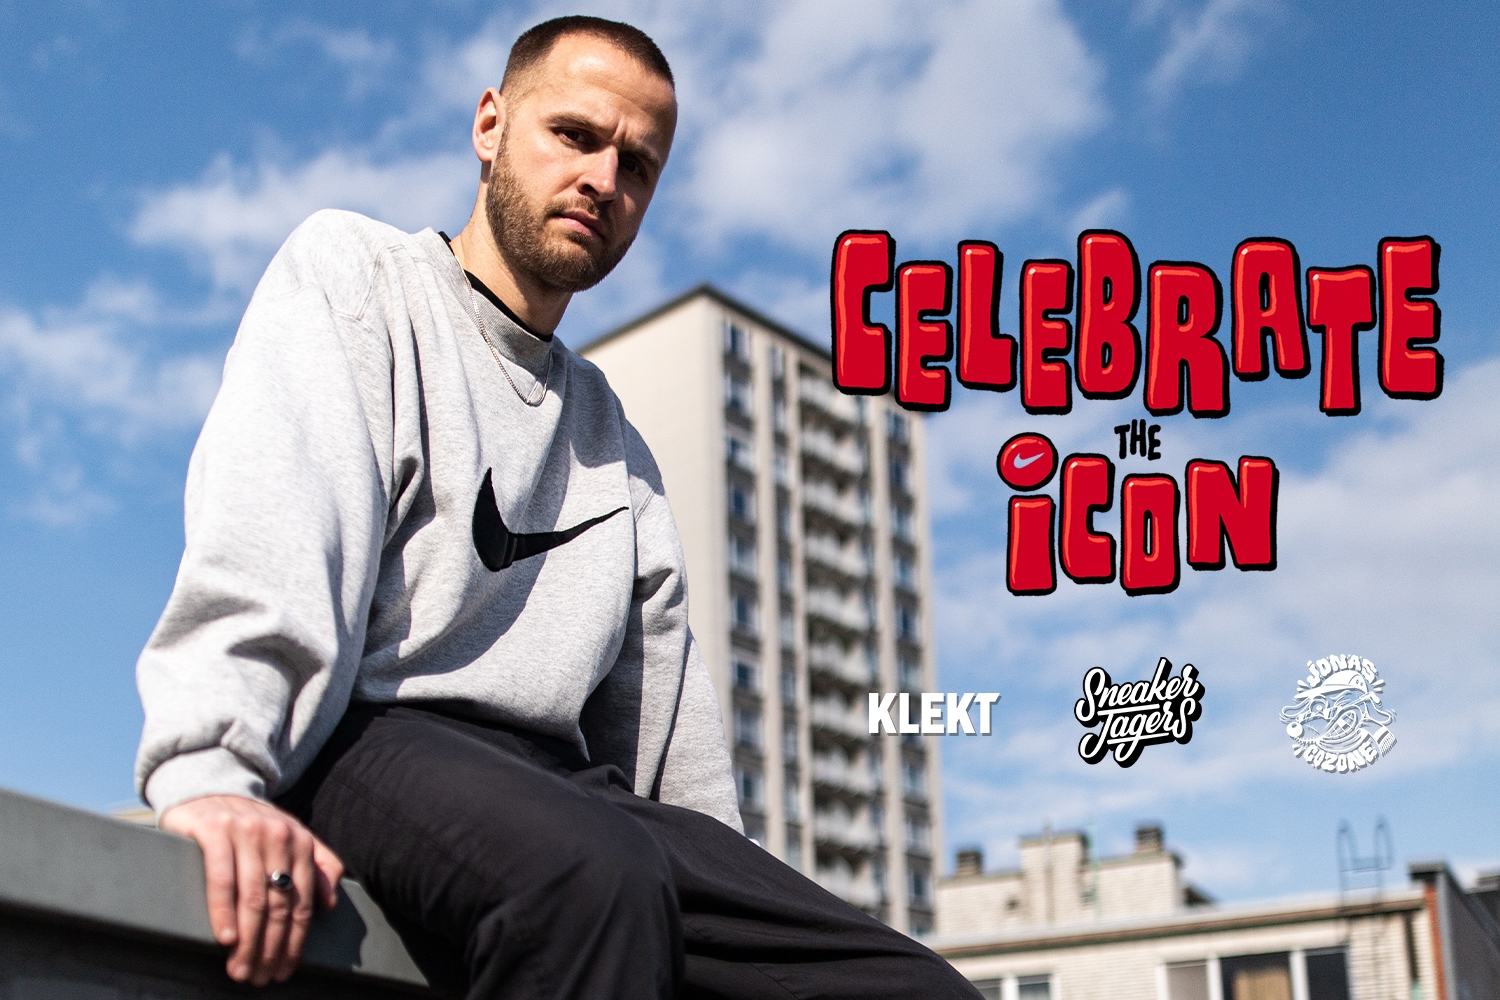 Die Sneakerjagers Celebrate the Icon Woche mit KLEKT und Jonas Cozone